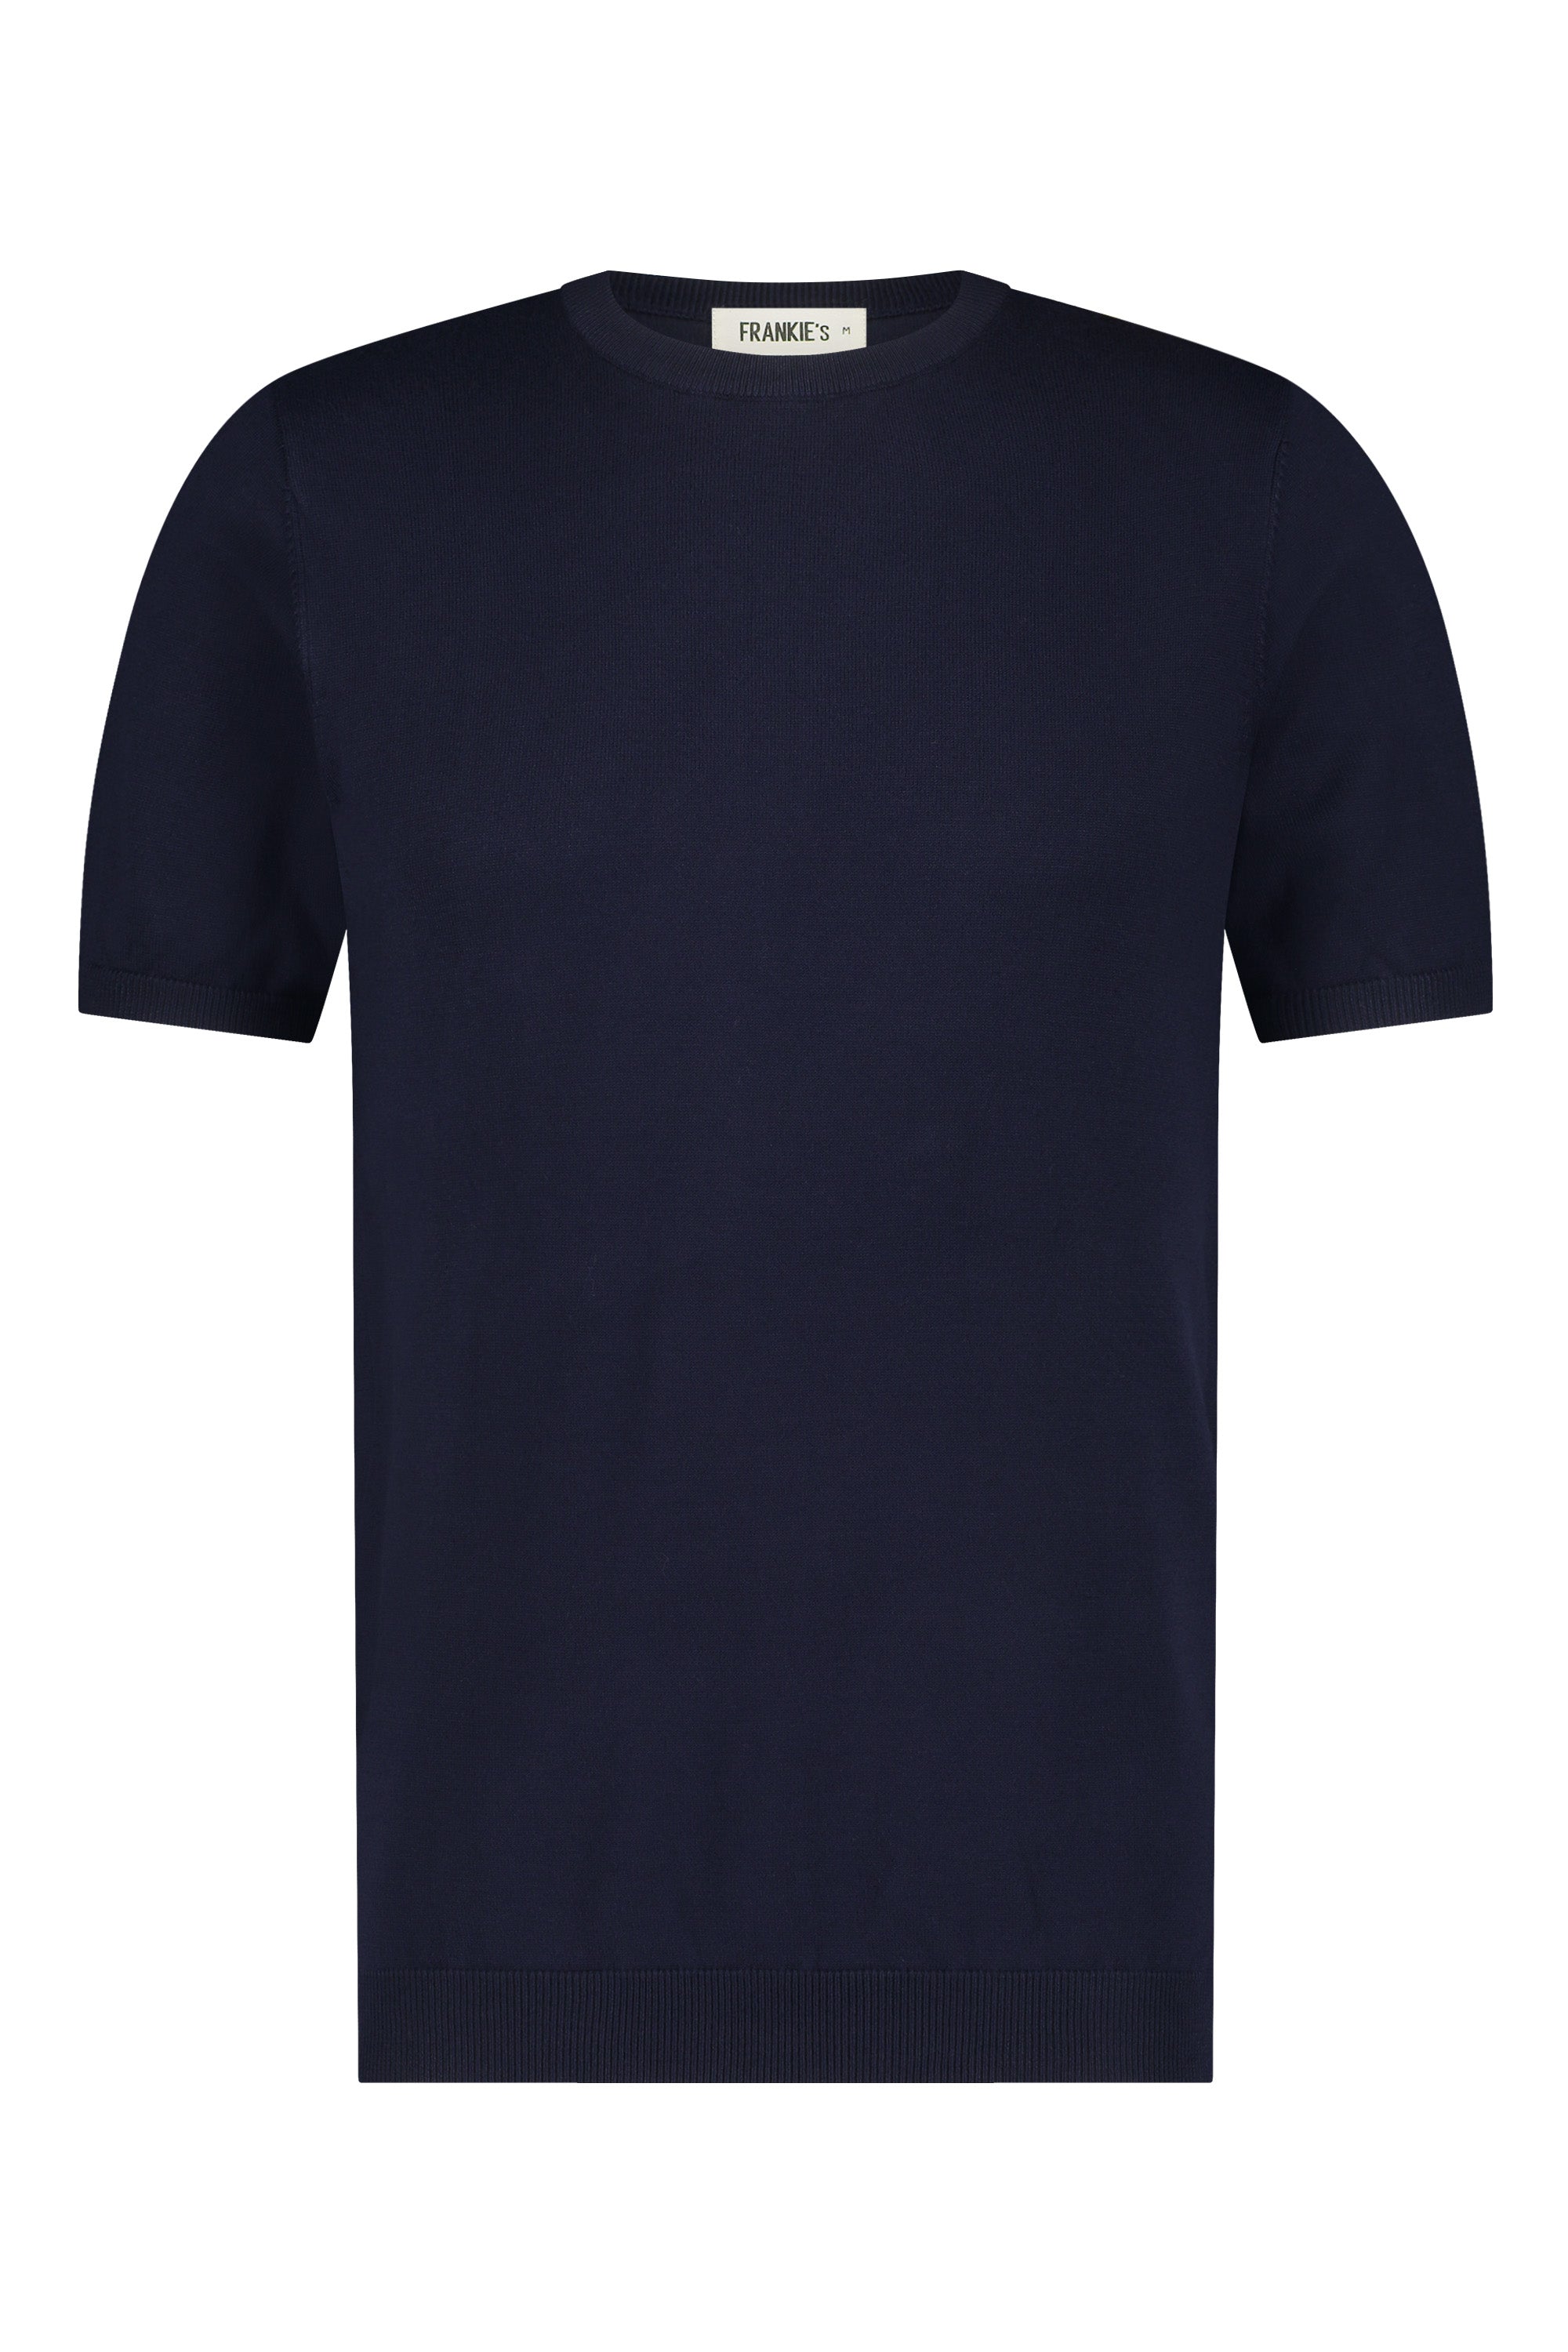 T-shirt knitwear short sleeve navy